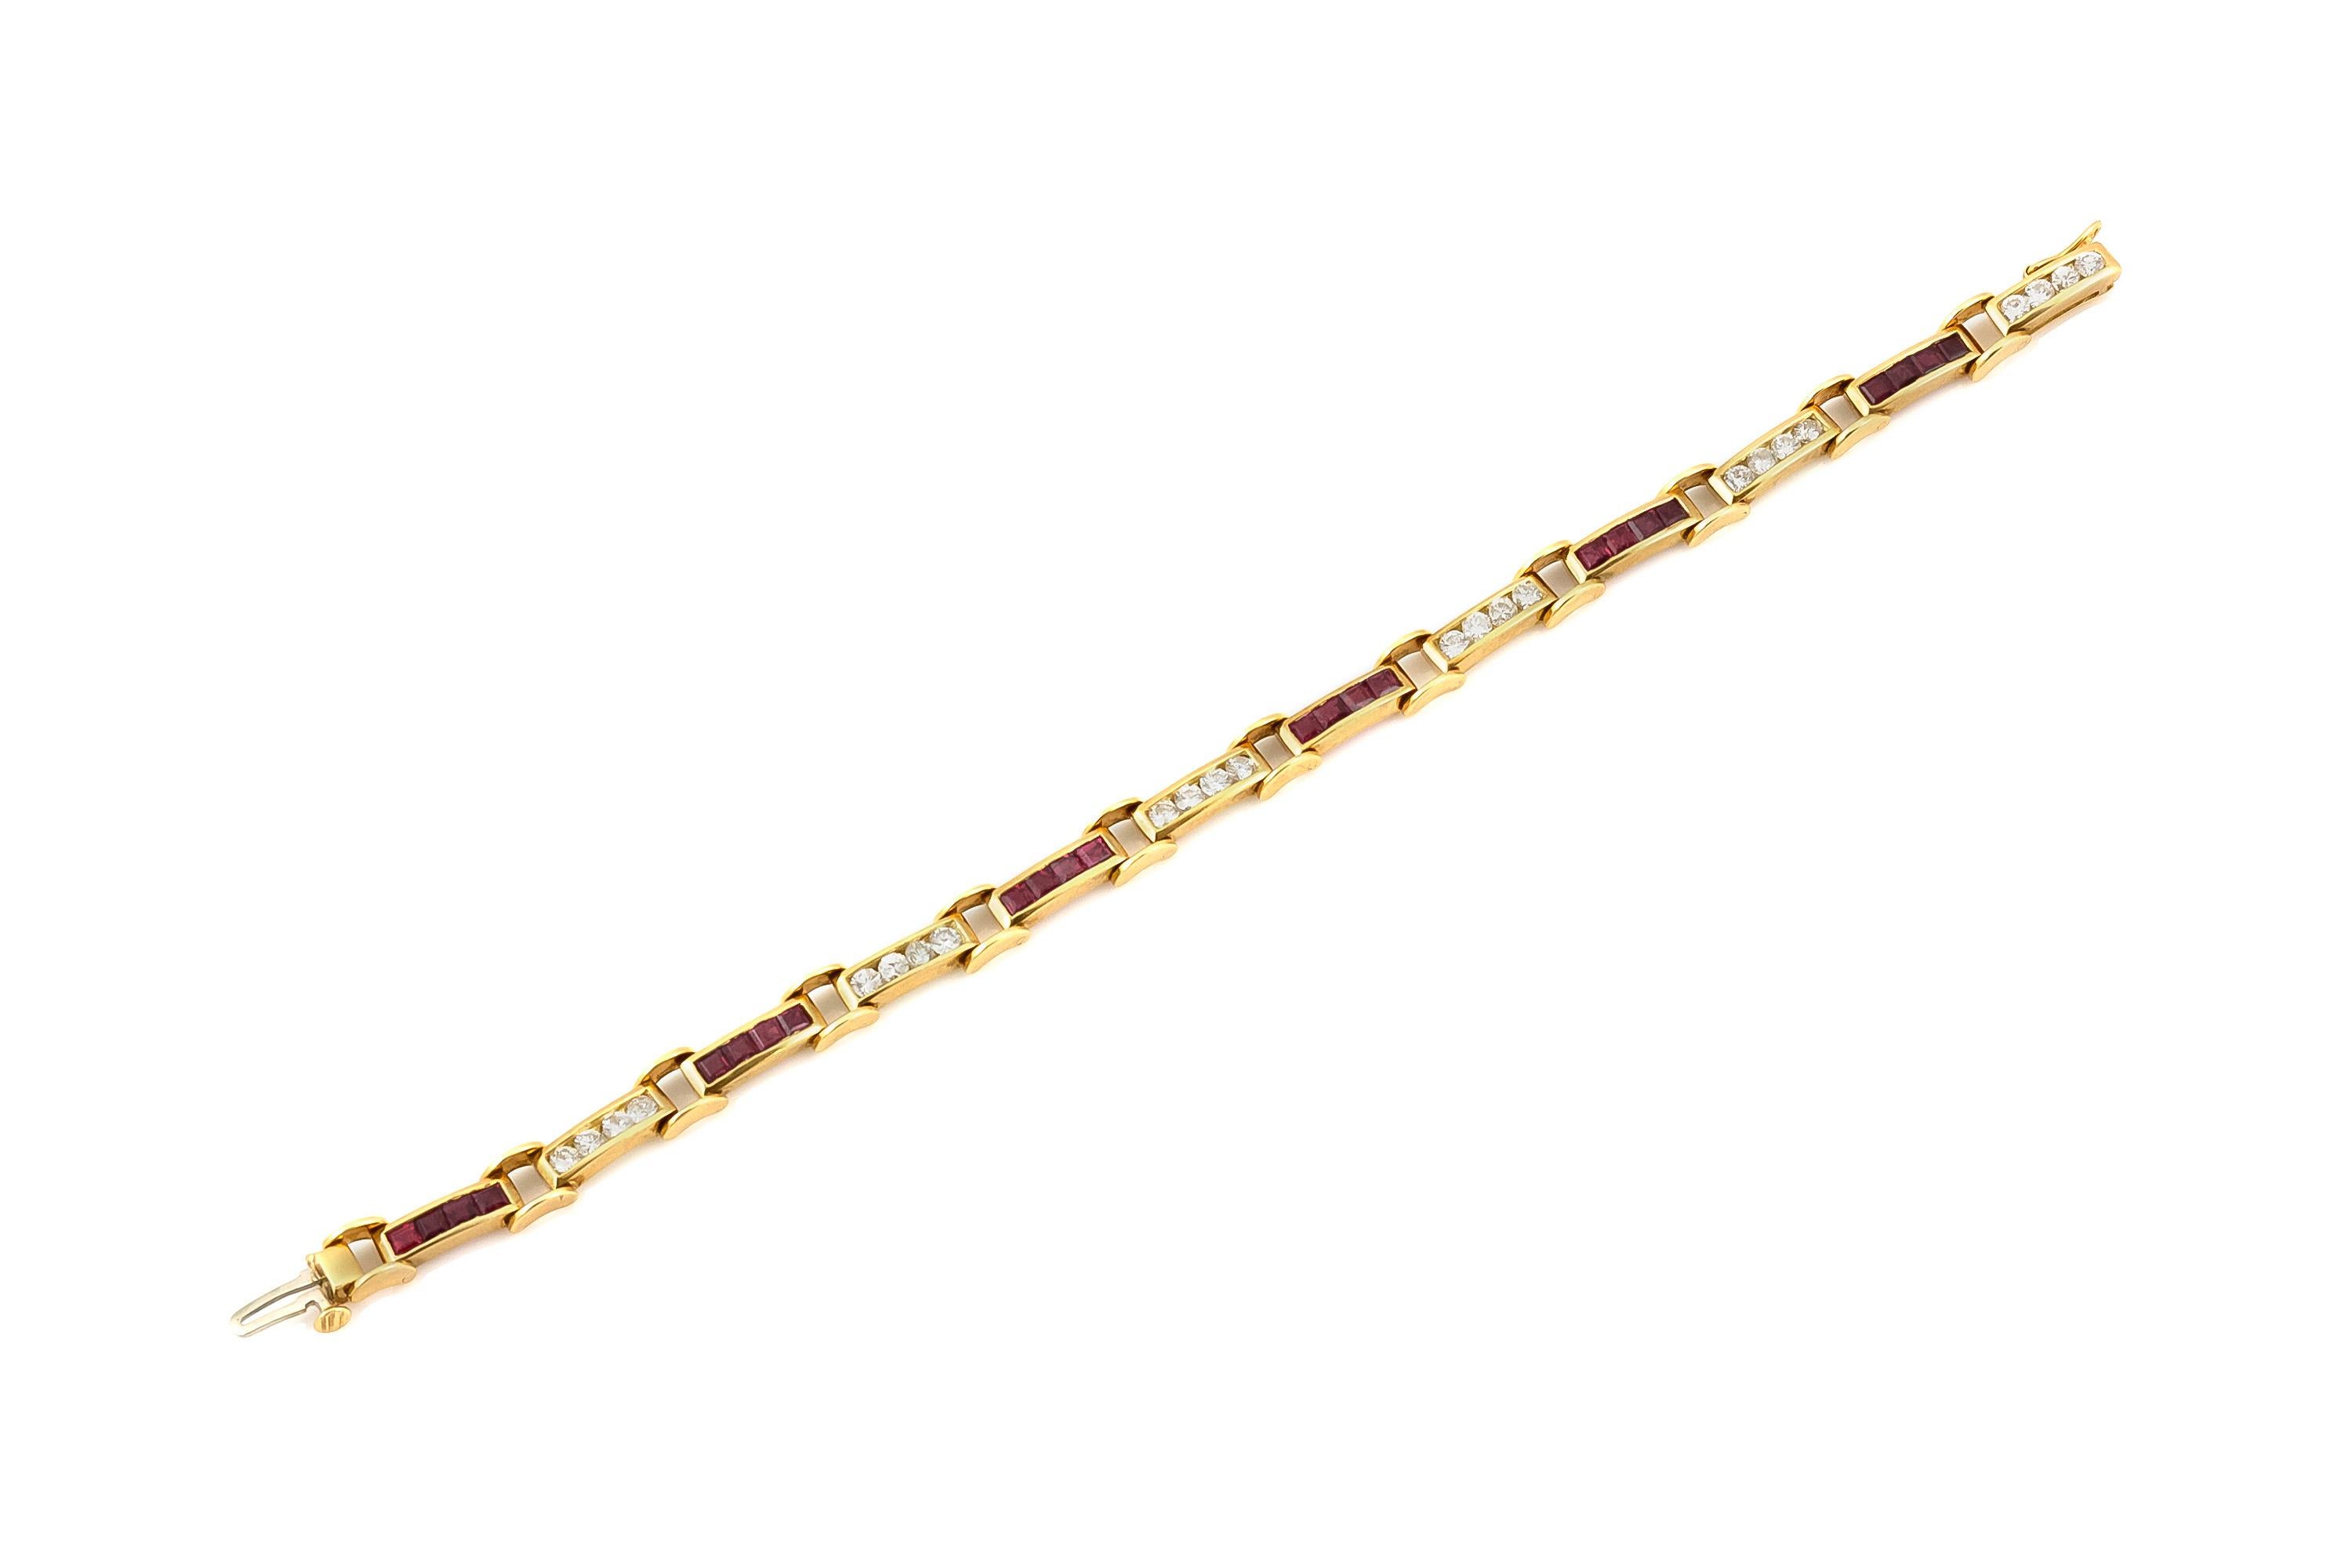 Le bracelet est finement travaillé en or jaune 18k avec des diamants pesant approximativement total de 1.50 carat et des rubis pesant approximativement total de 2.50 carat.
Vers 1980.